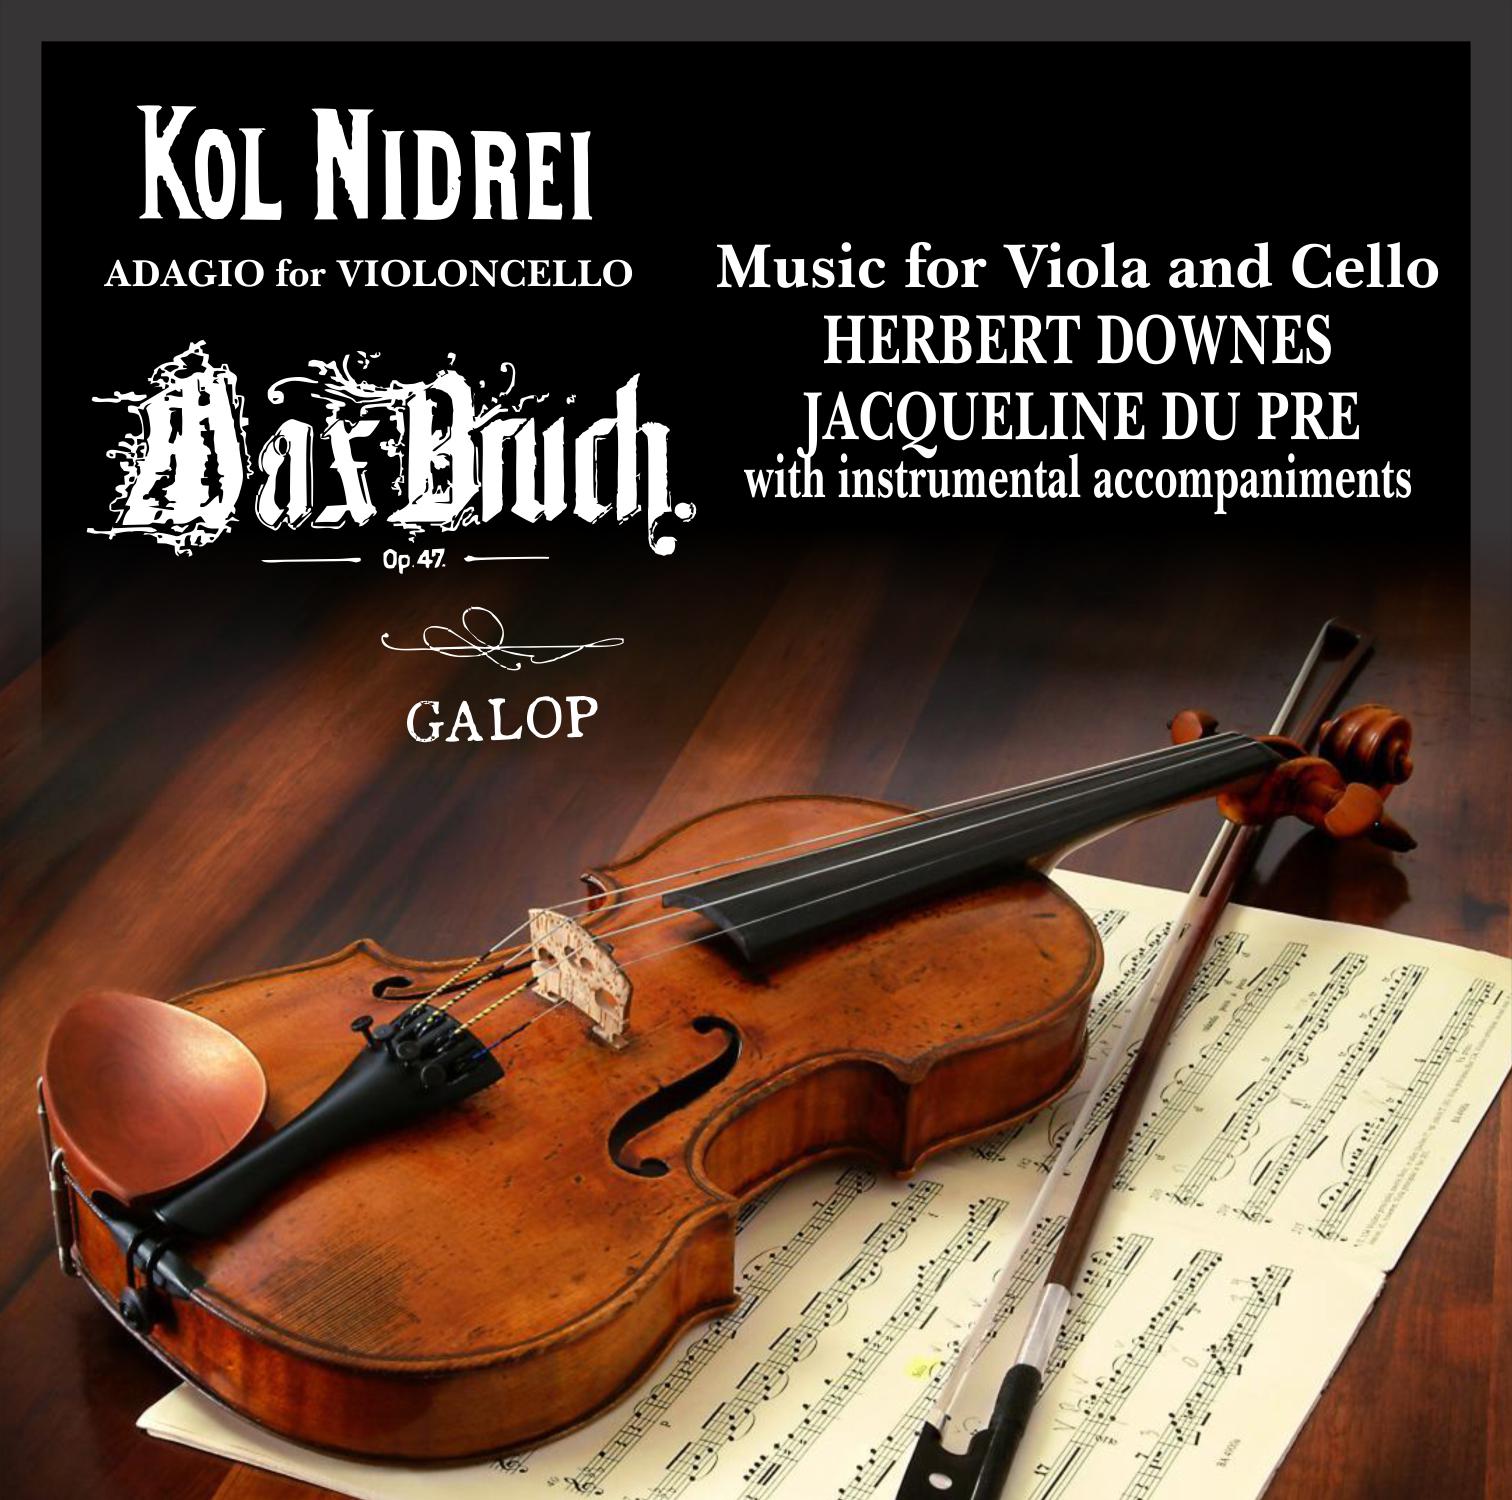 Adagio From Sonata in C Major for Viola Da Gamba / Handel